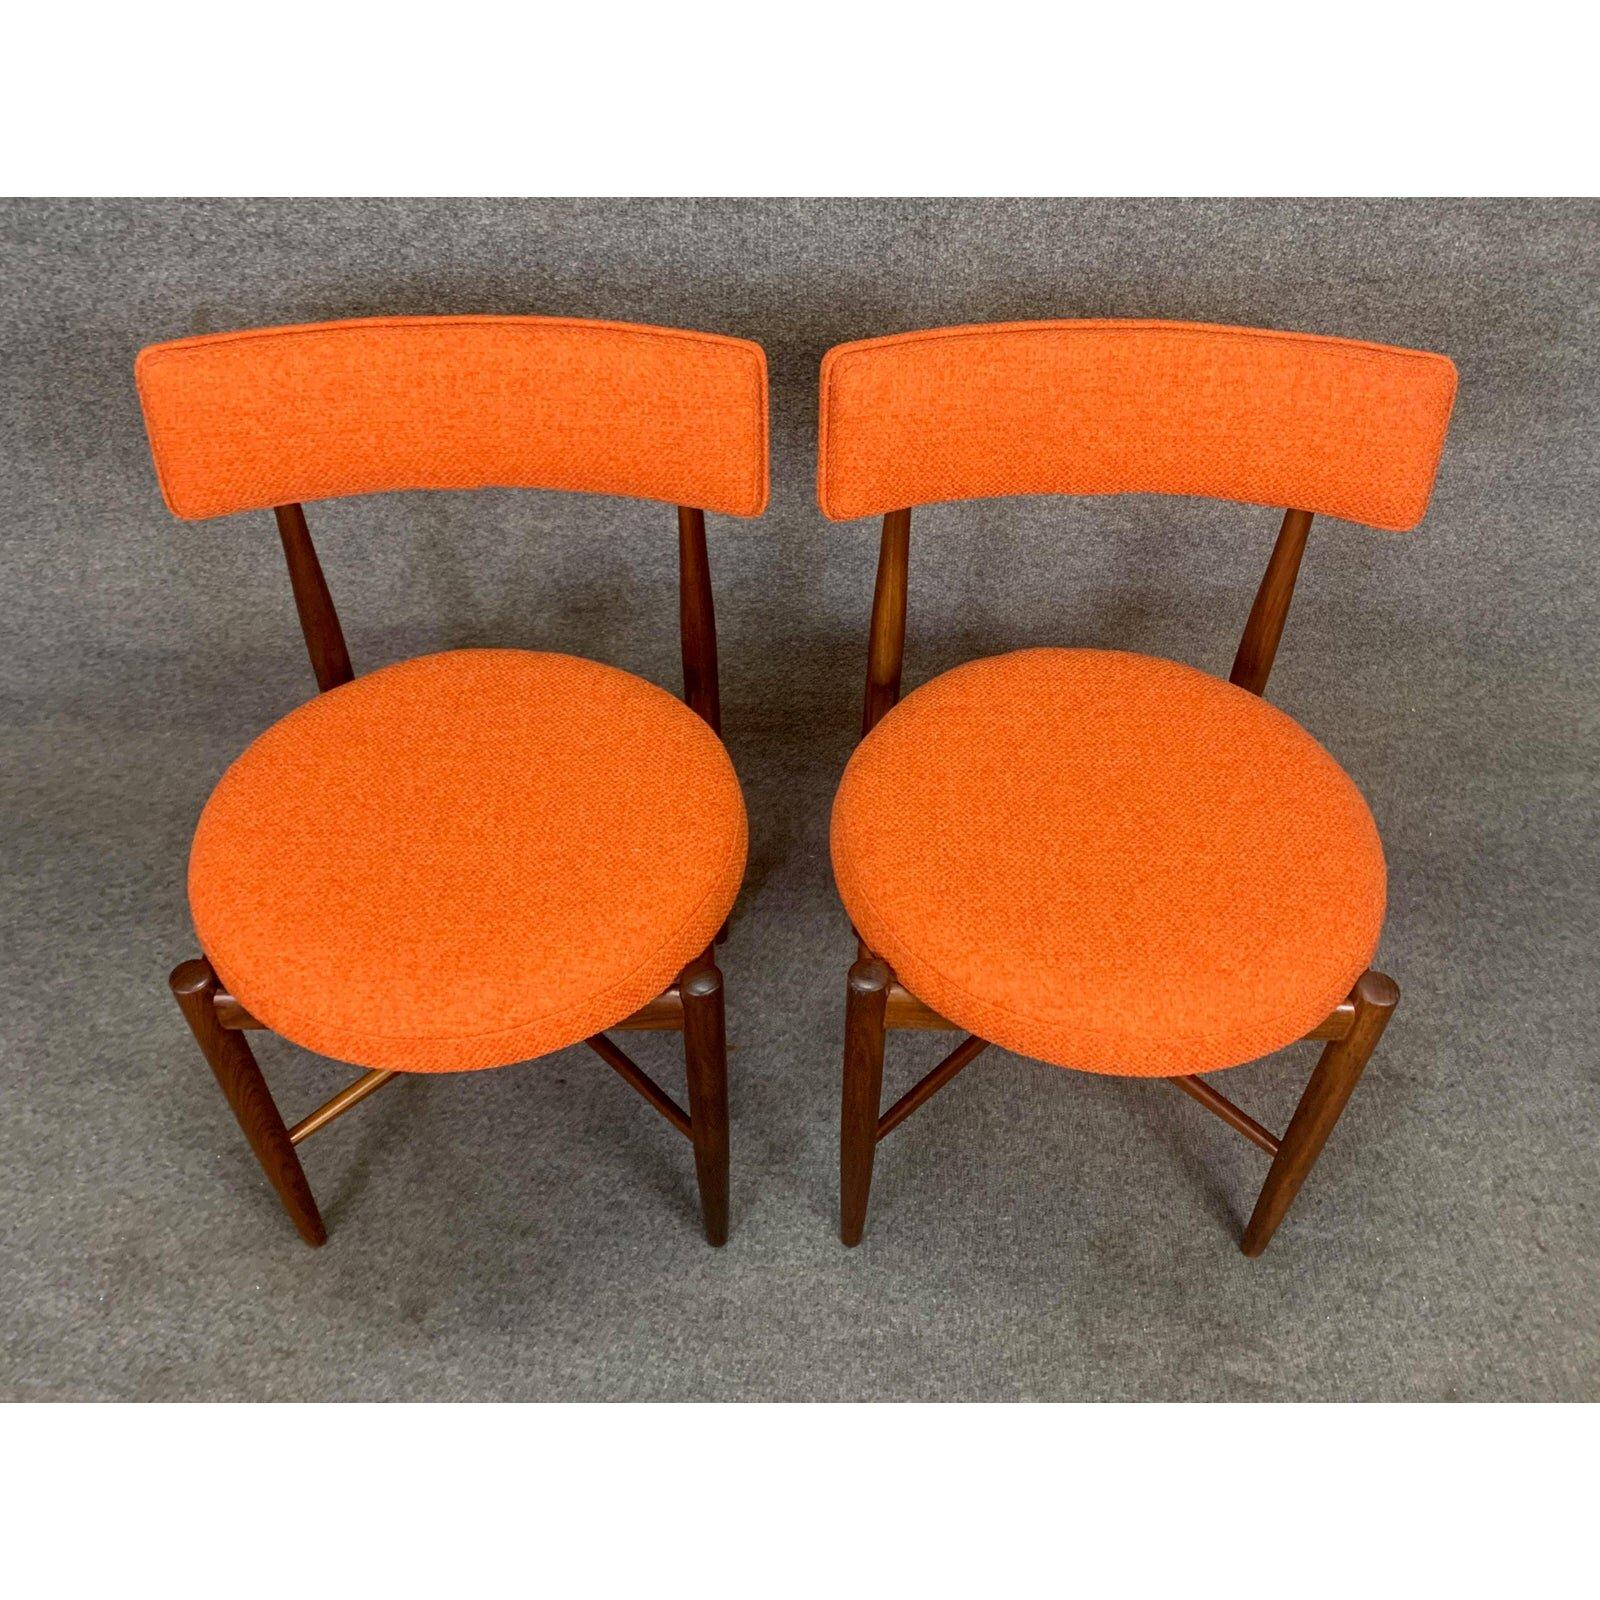 Mid-Century Modern Pair of Vintage British Mid Century Modern Teak Accent Chairs by G Plan